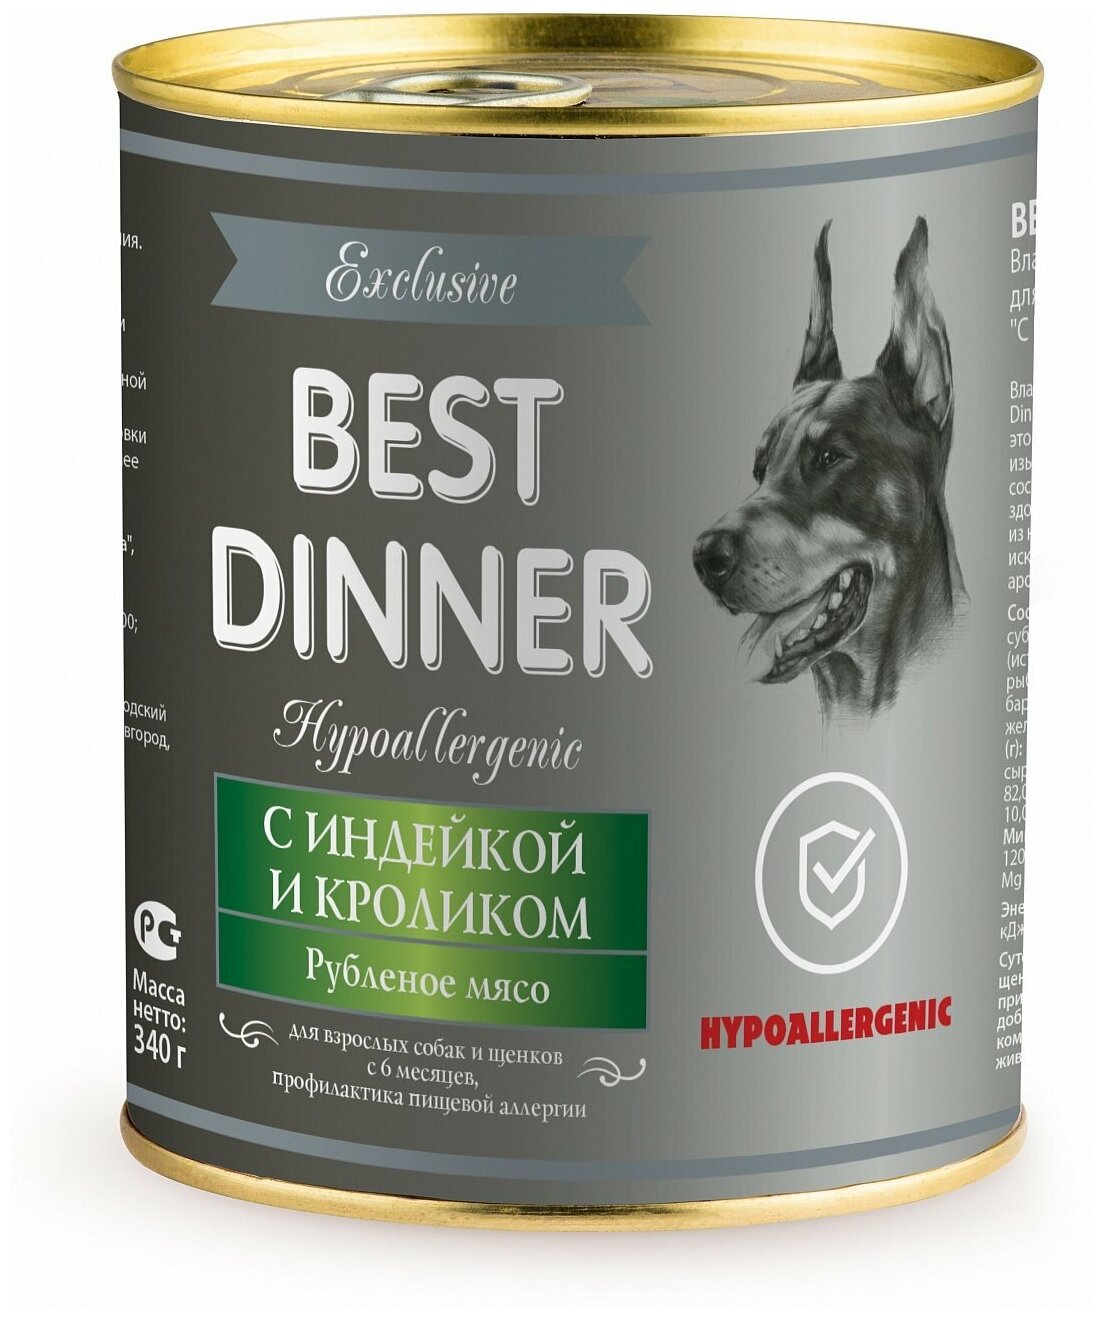 Влажный корм для собак Best Dinner Exclusive Hypoallergenic, гипоаллергенный, индейка, кролик 340 г